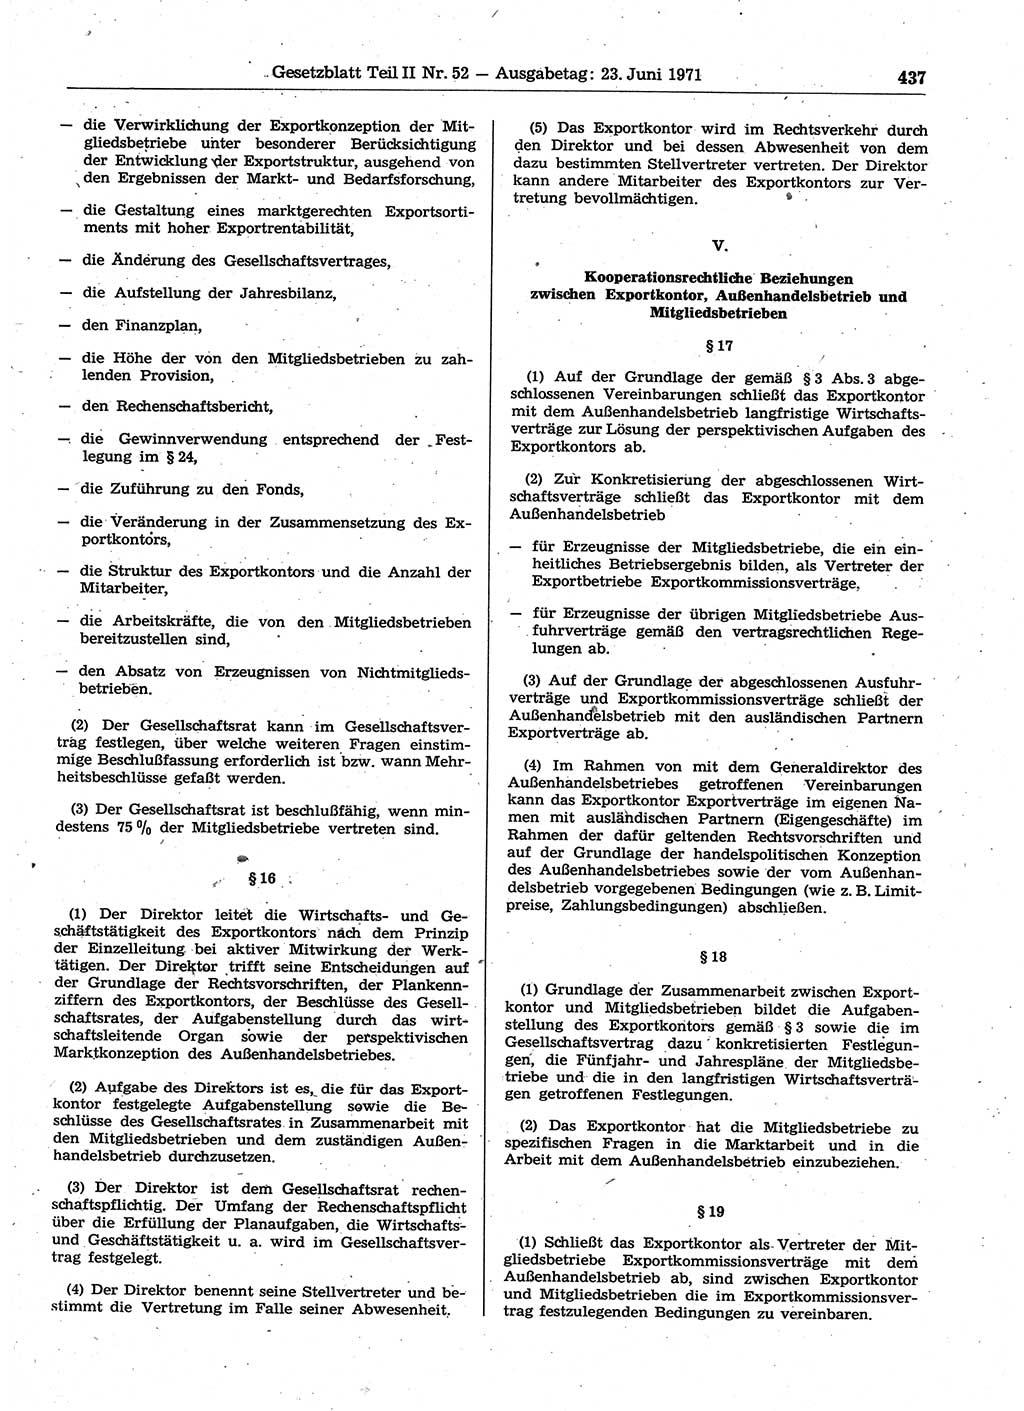 Gesetzblatt (GBl.) der Deutschen Demokratischen Republik (DDR) Teil ⅠⅠ 1971, Seite 437 (GBl. DDR ⅠⅠ 1971, S. 437)